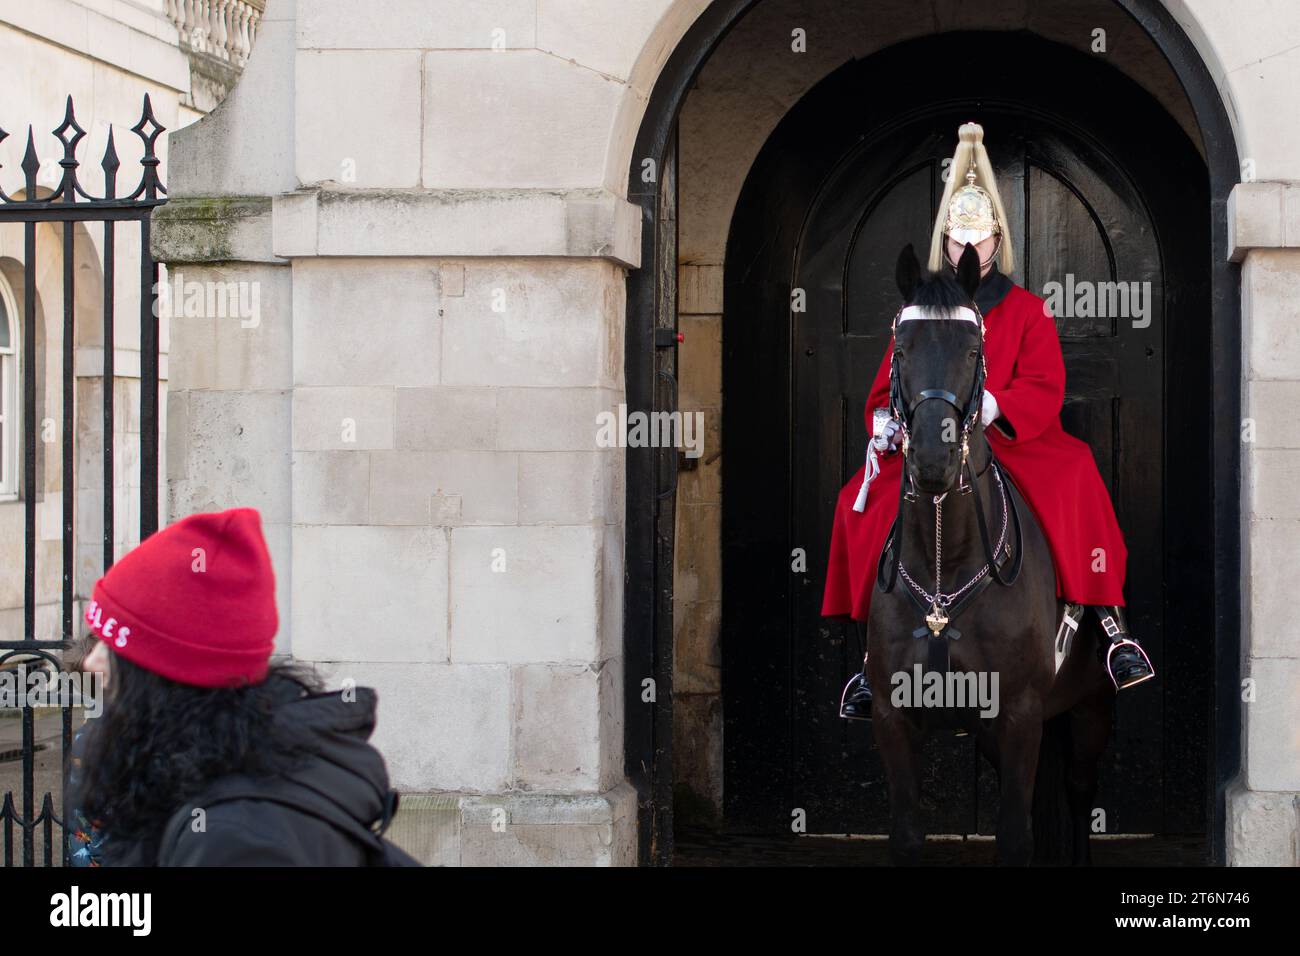 Image amusante d'un soldat du Household Cavalry Mounted Regiment avec l'oreille des chevaux obscurcissant partiellement son visage tandis qu'une personne passe devant Banque D'Images